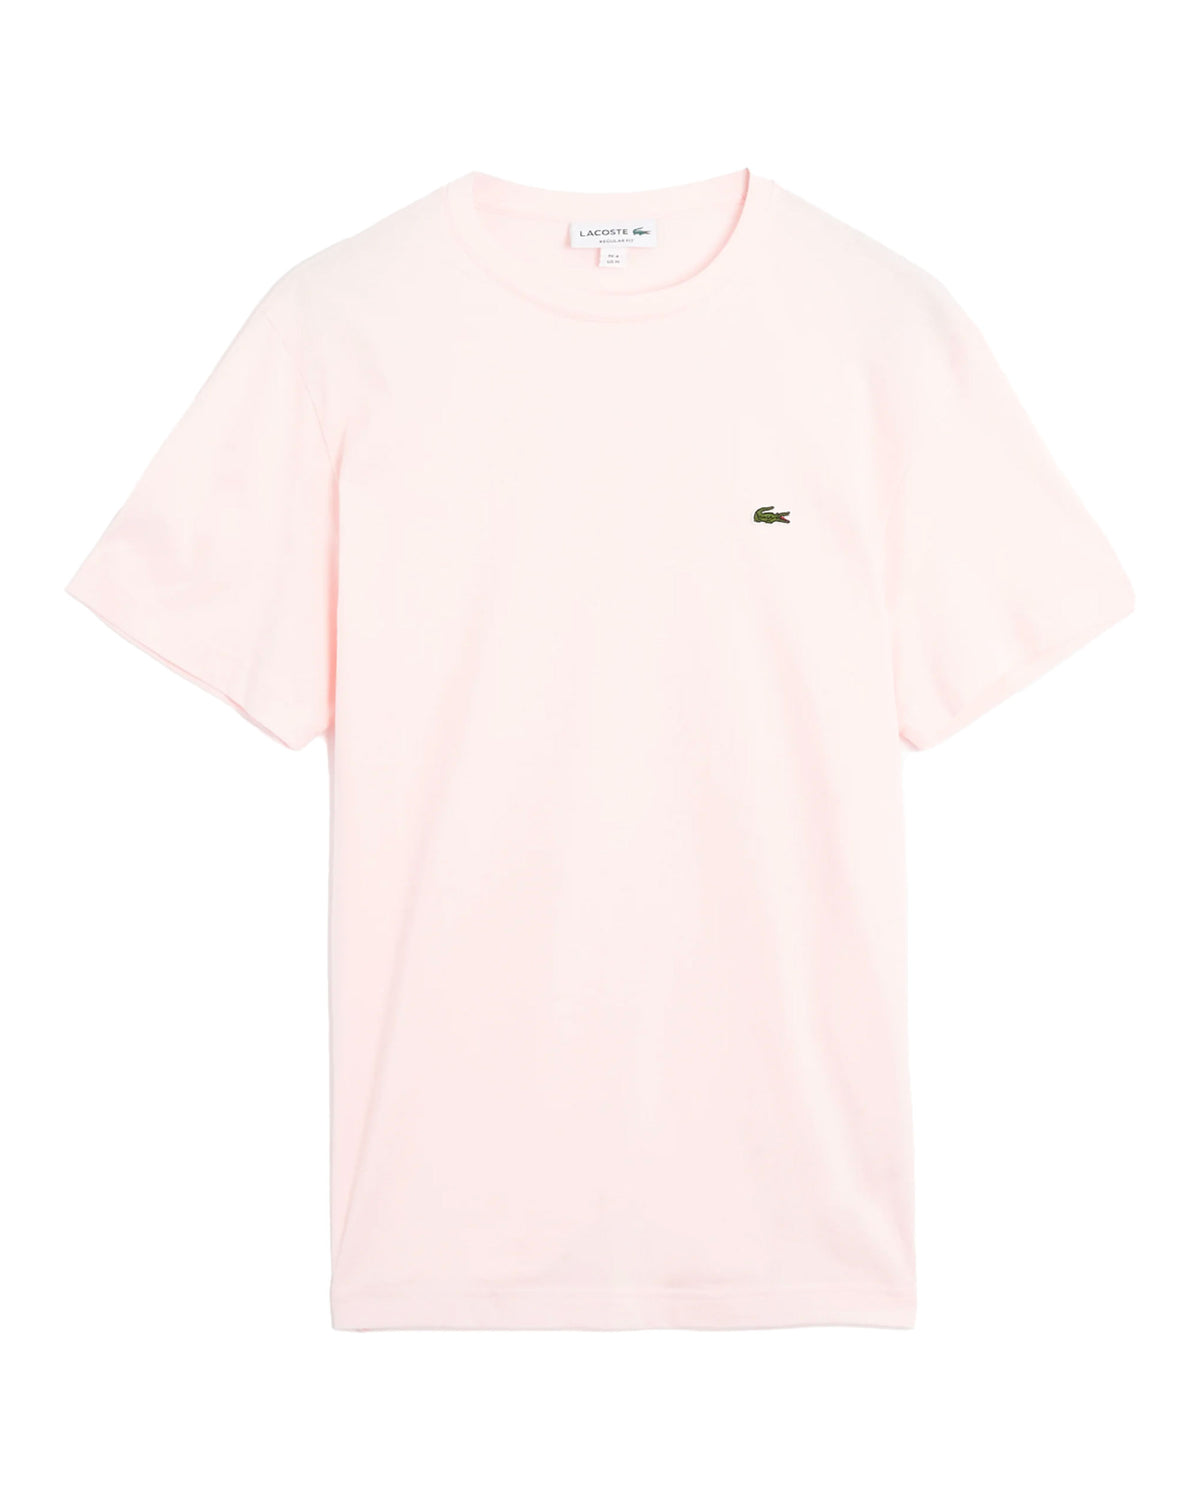 Man Tee Lacoste Basic Logo Pink